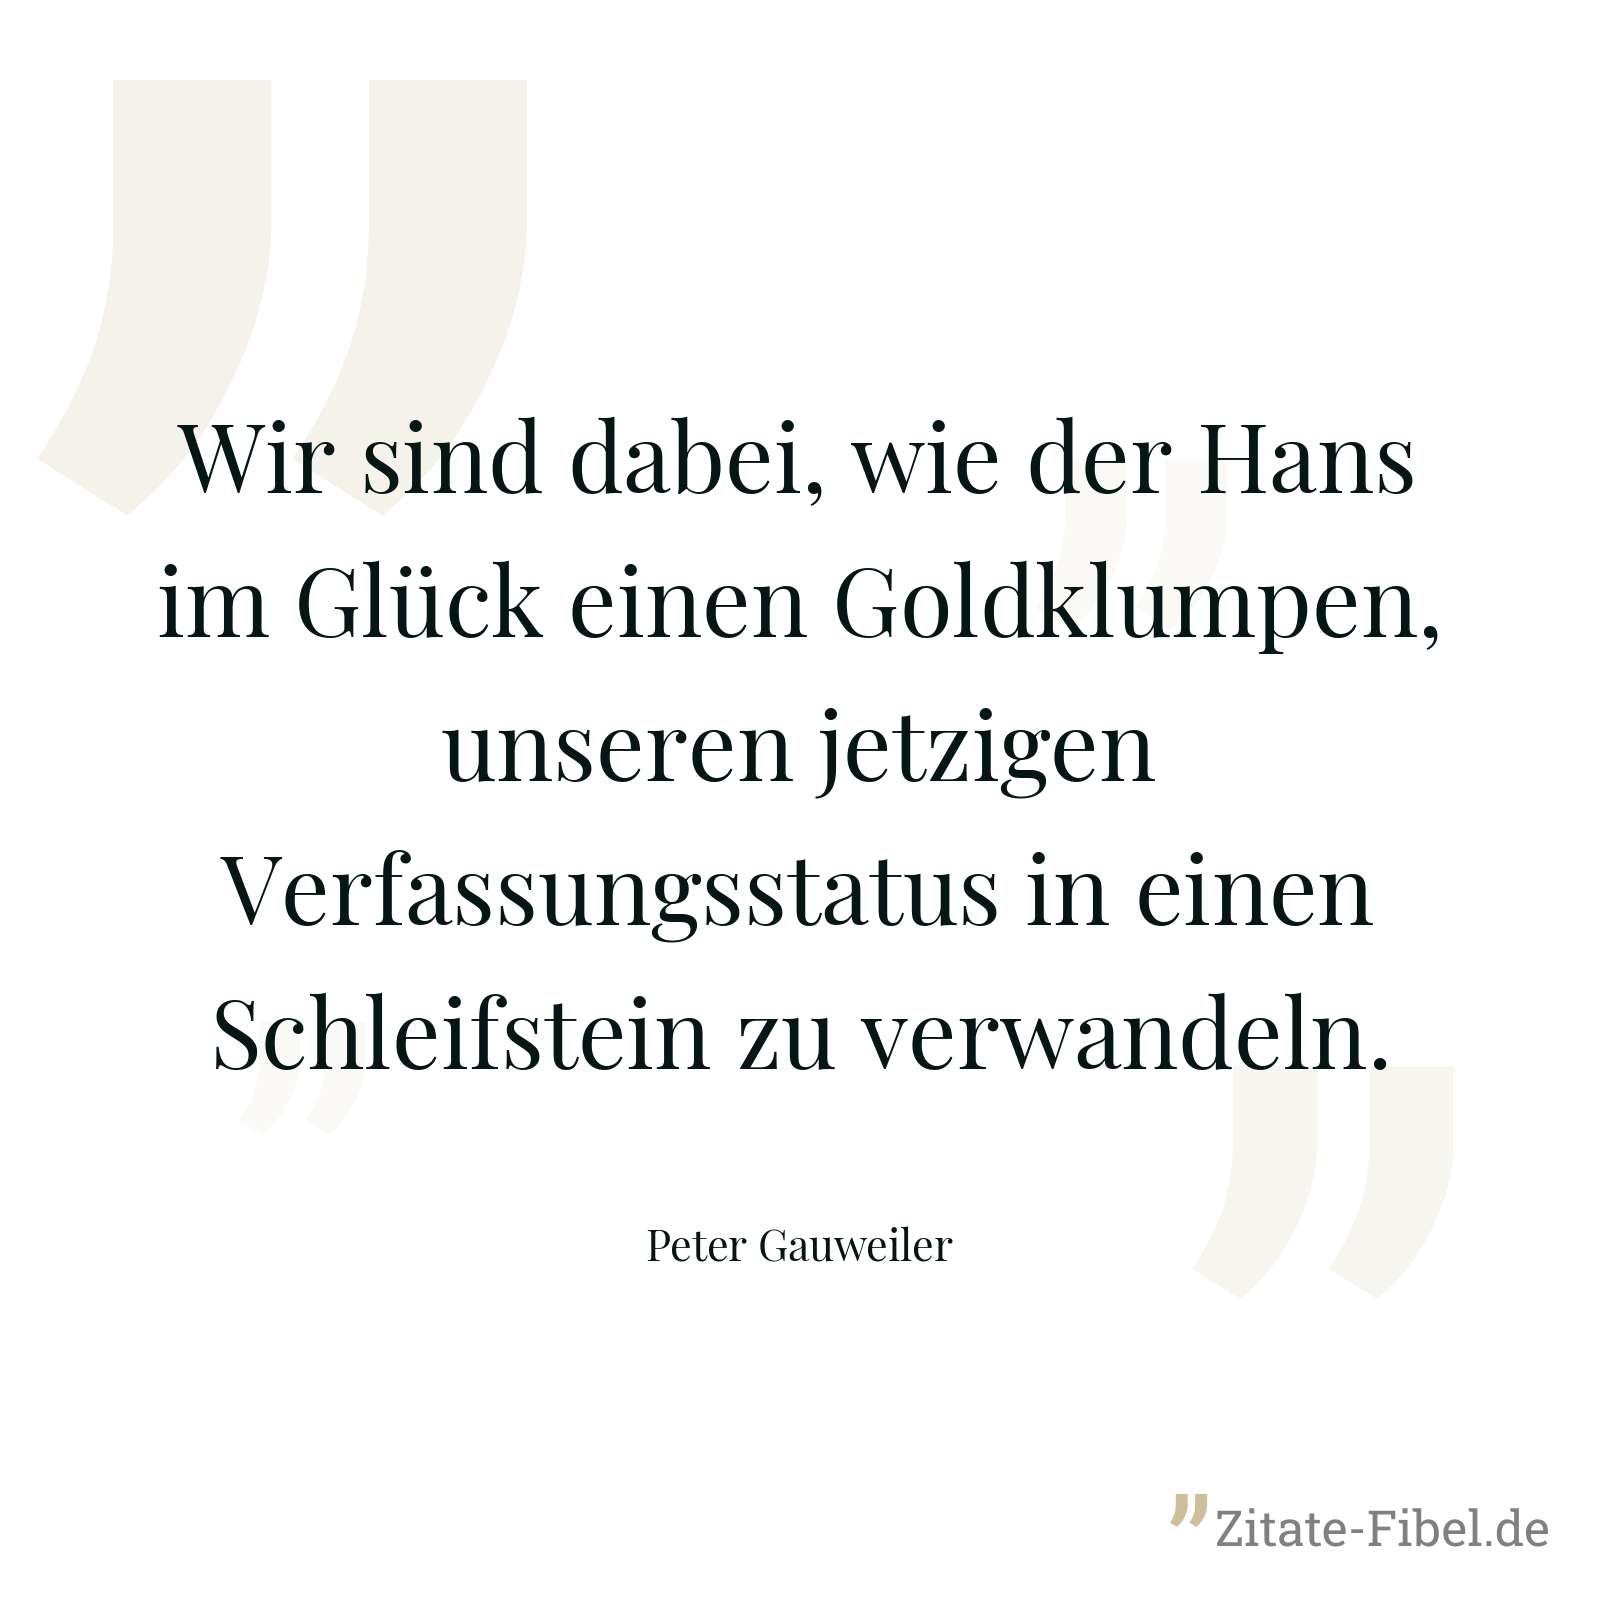 Wir sind dabei, wie der Hans im Glück einen Goldklumpen, unseren jetzigen Verfassungsstatus in einen Schleifstein zu verwandeln. - Peter Gauweiler